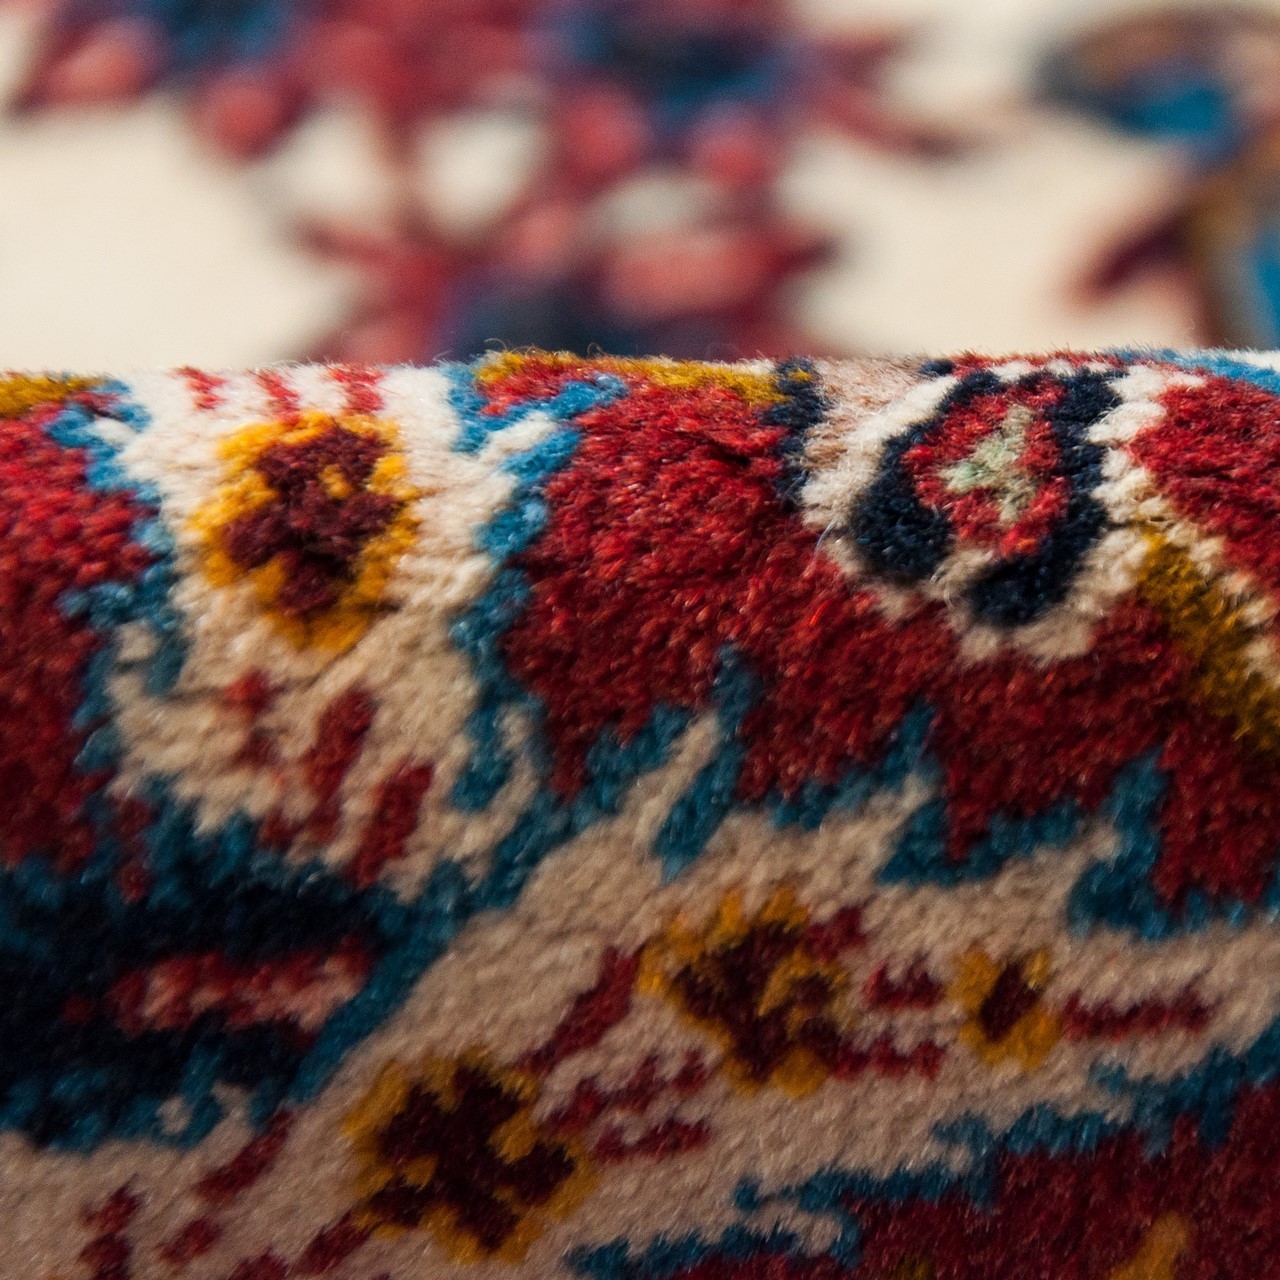 یک جفت قالیچه آنتیک اصفهان کد 102103